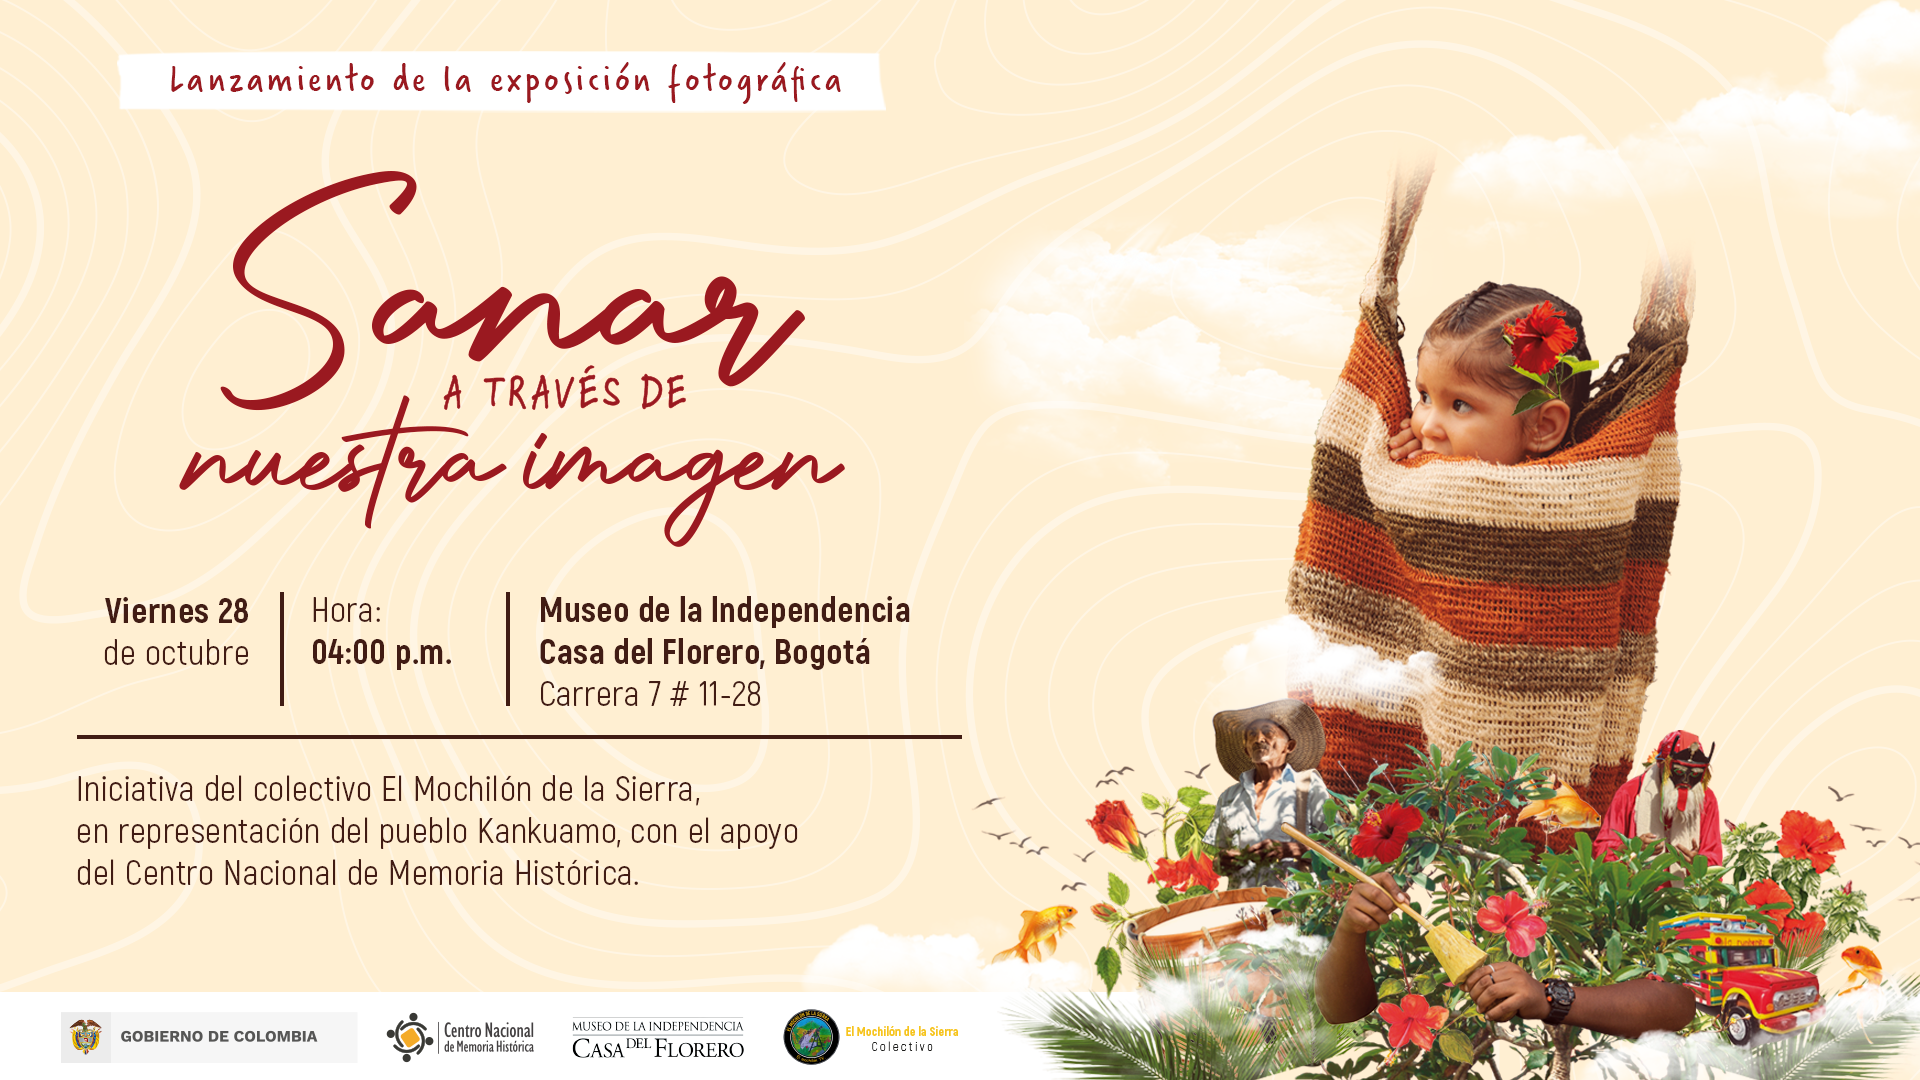 Indígenas kankuamos, sobrevivientes del conflicto, presentan la exposición «Sanar a través de nuestra imagen» en el Museo de la Independencia – Casa del Florero 